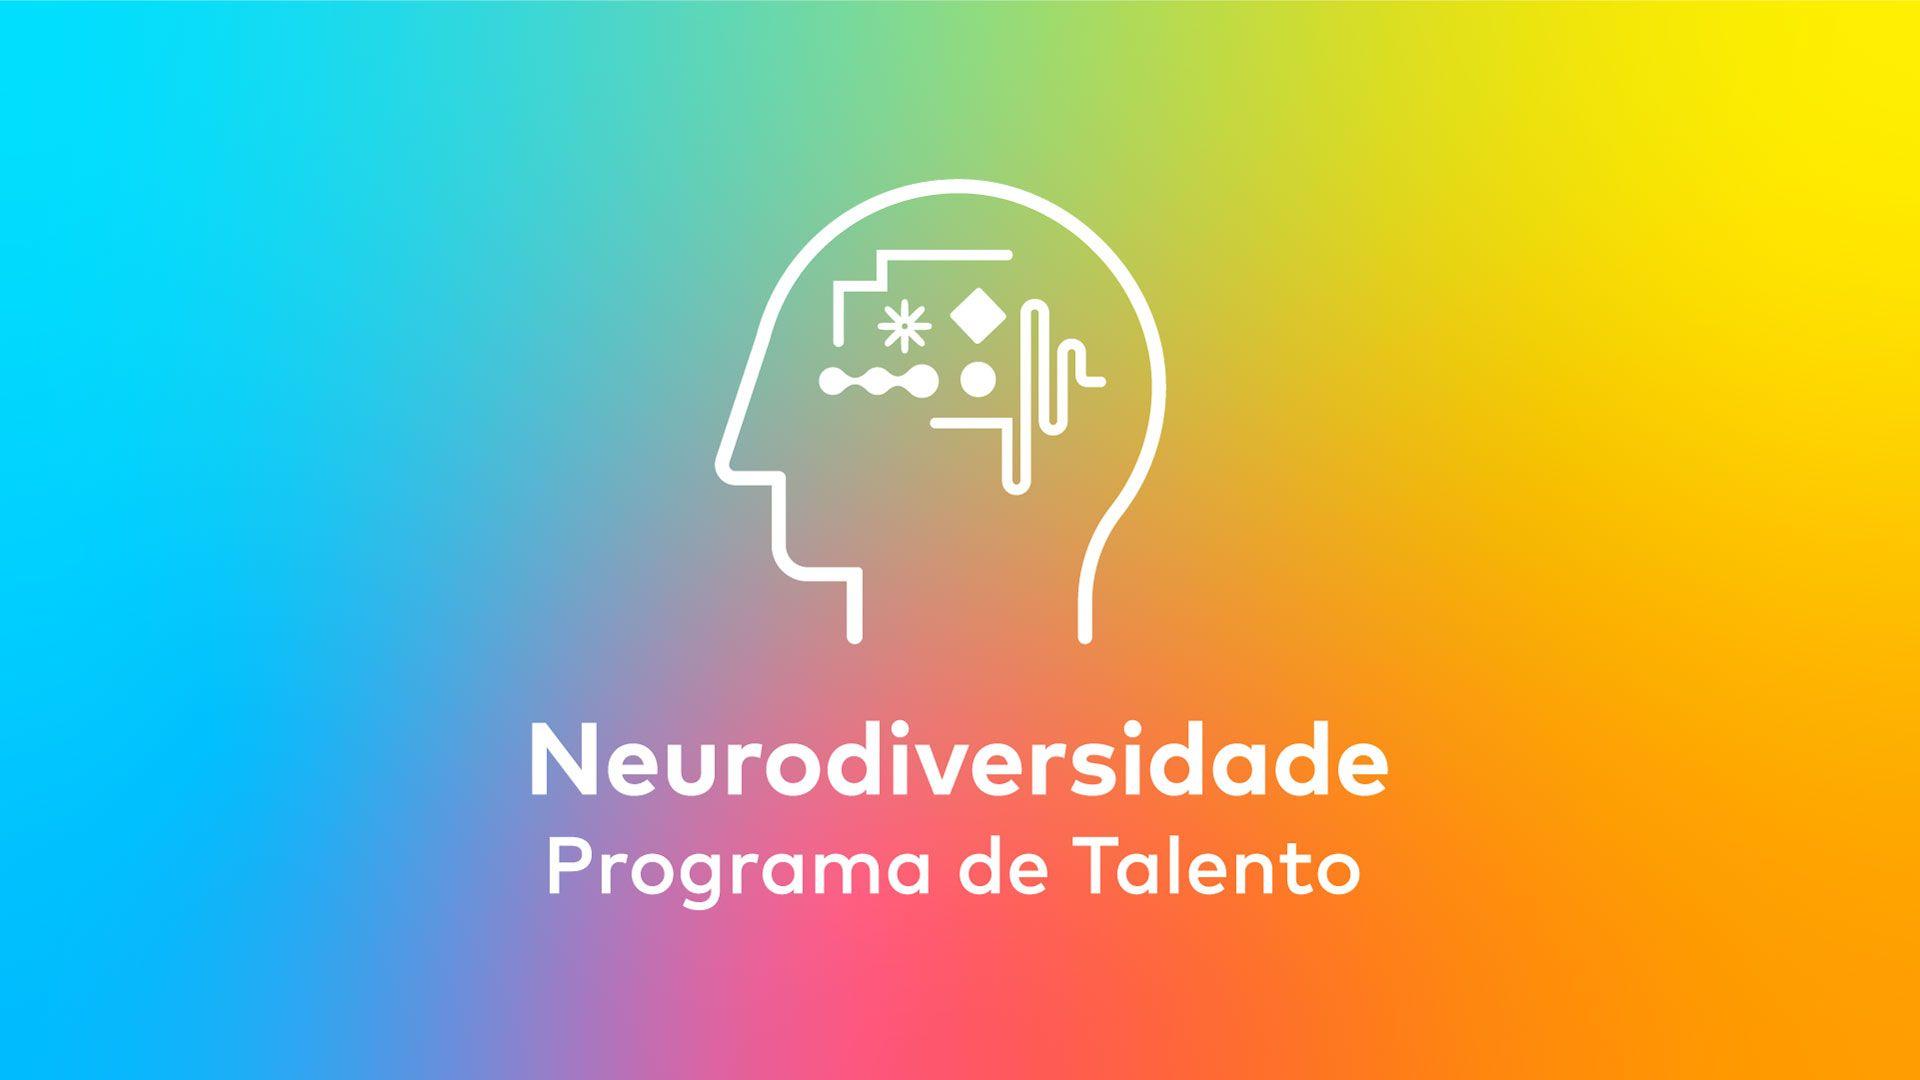 Neurodiversidade Programa de Talento